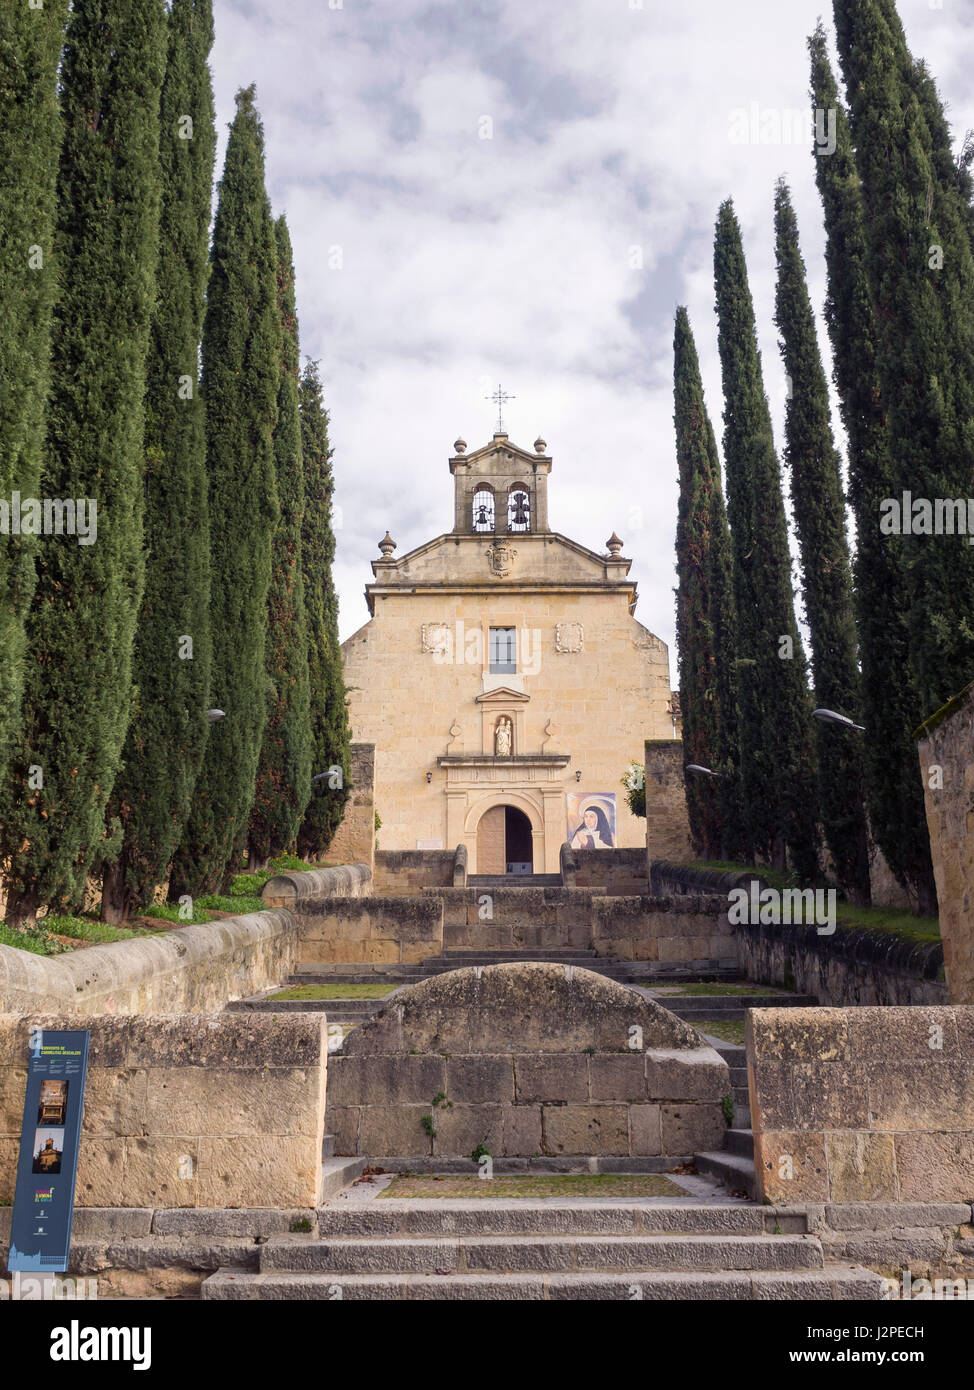 Convento de los carmelitas descalzos donde está el sepulcro de San Juan de la Cruz. Segovia, Castilla León, España. Stock Photo